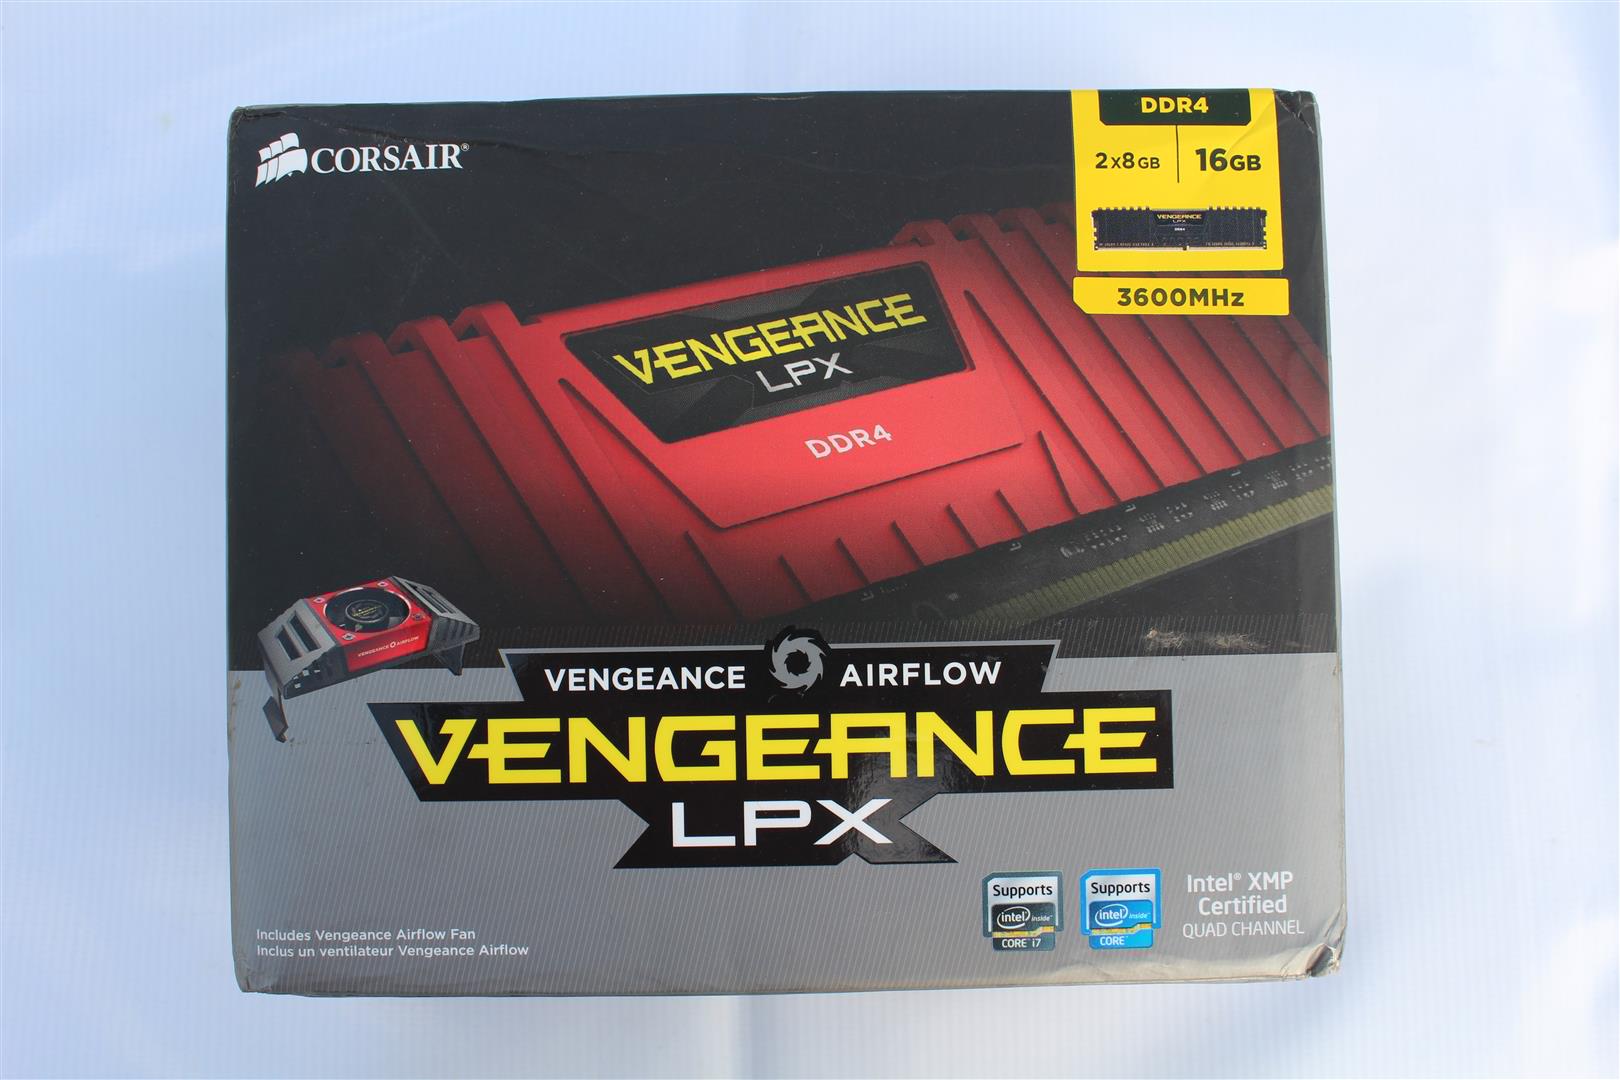 Vengeance LPX DDR4 3600MHz Review | PC TeK REVIEWS